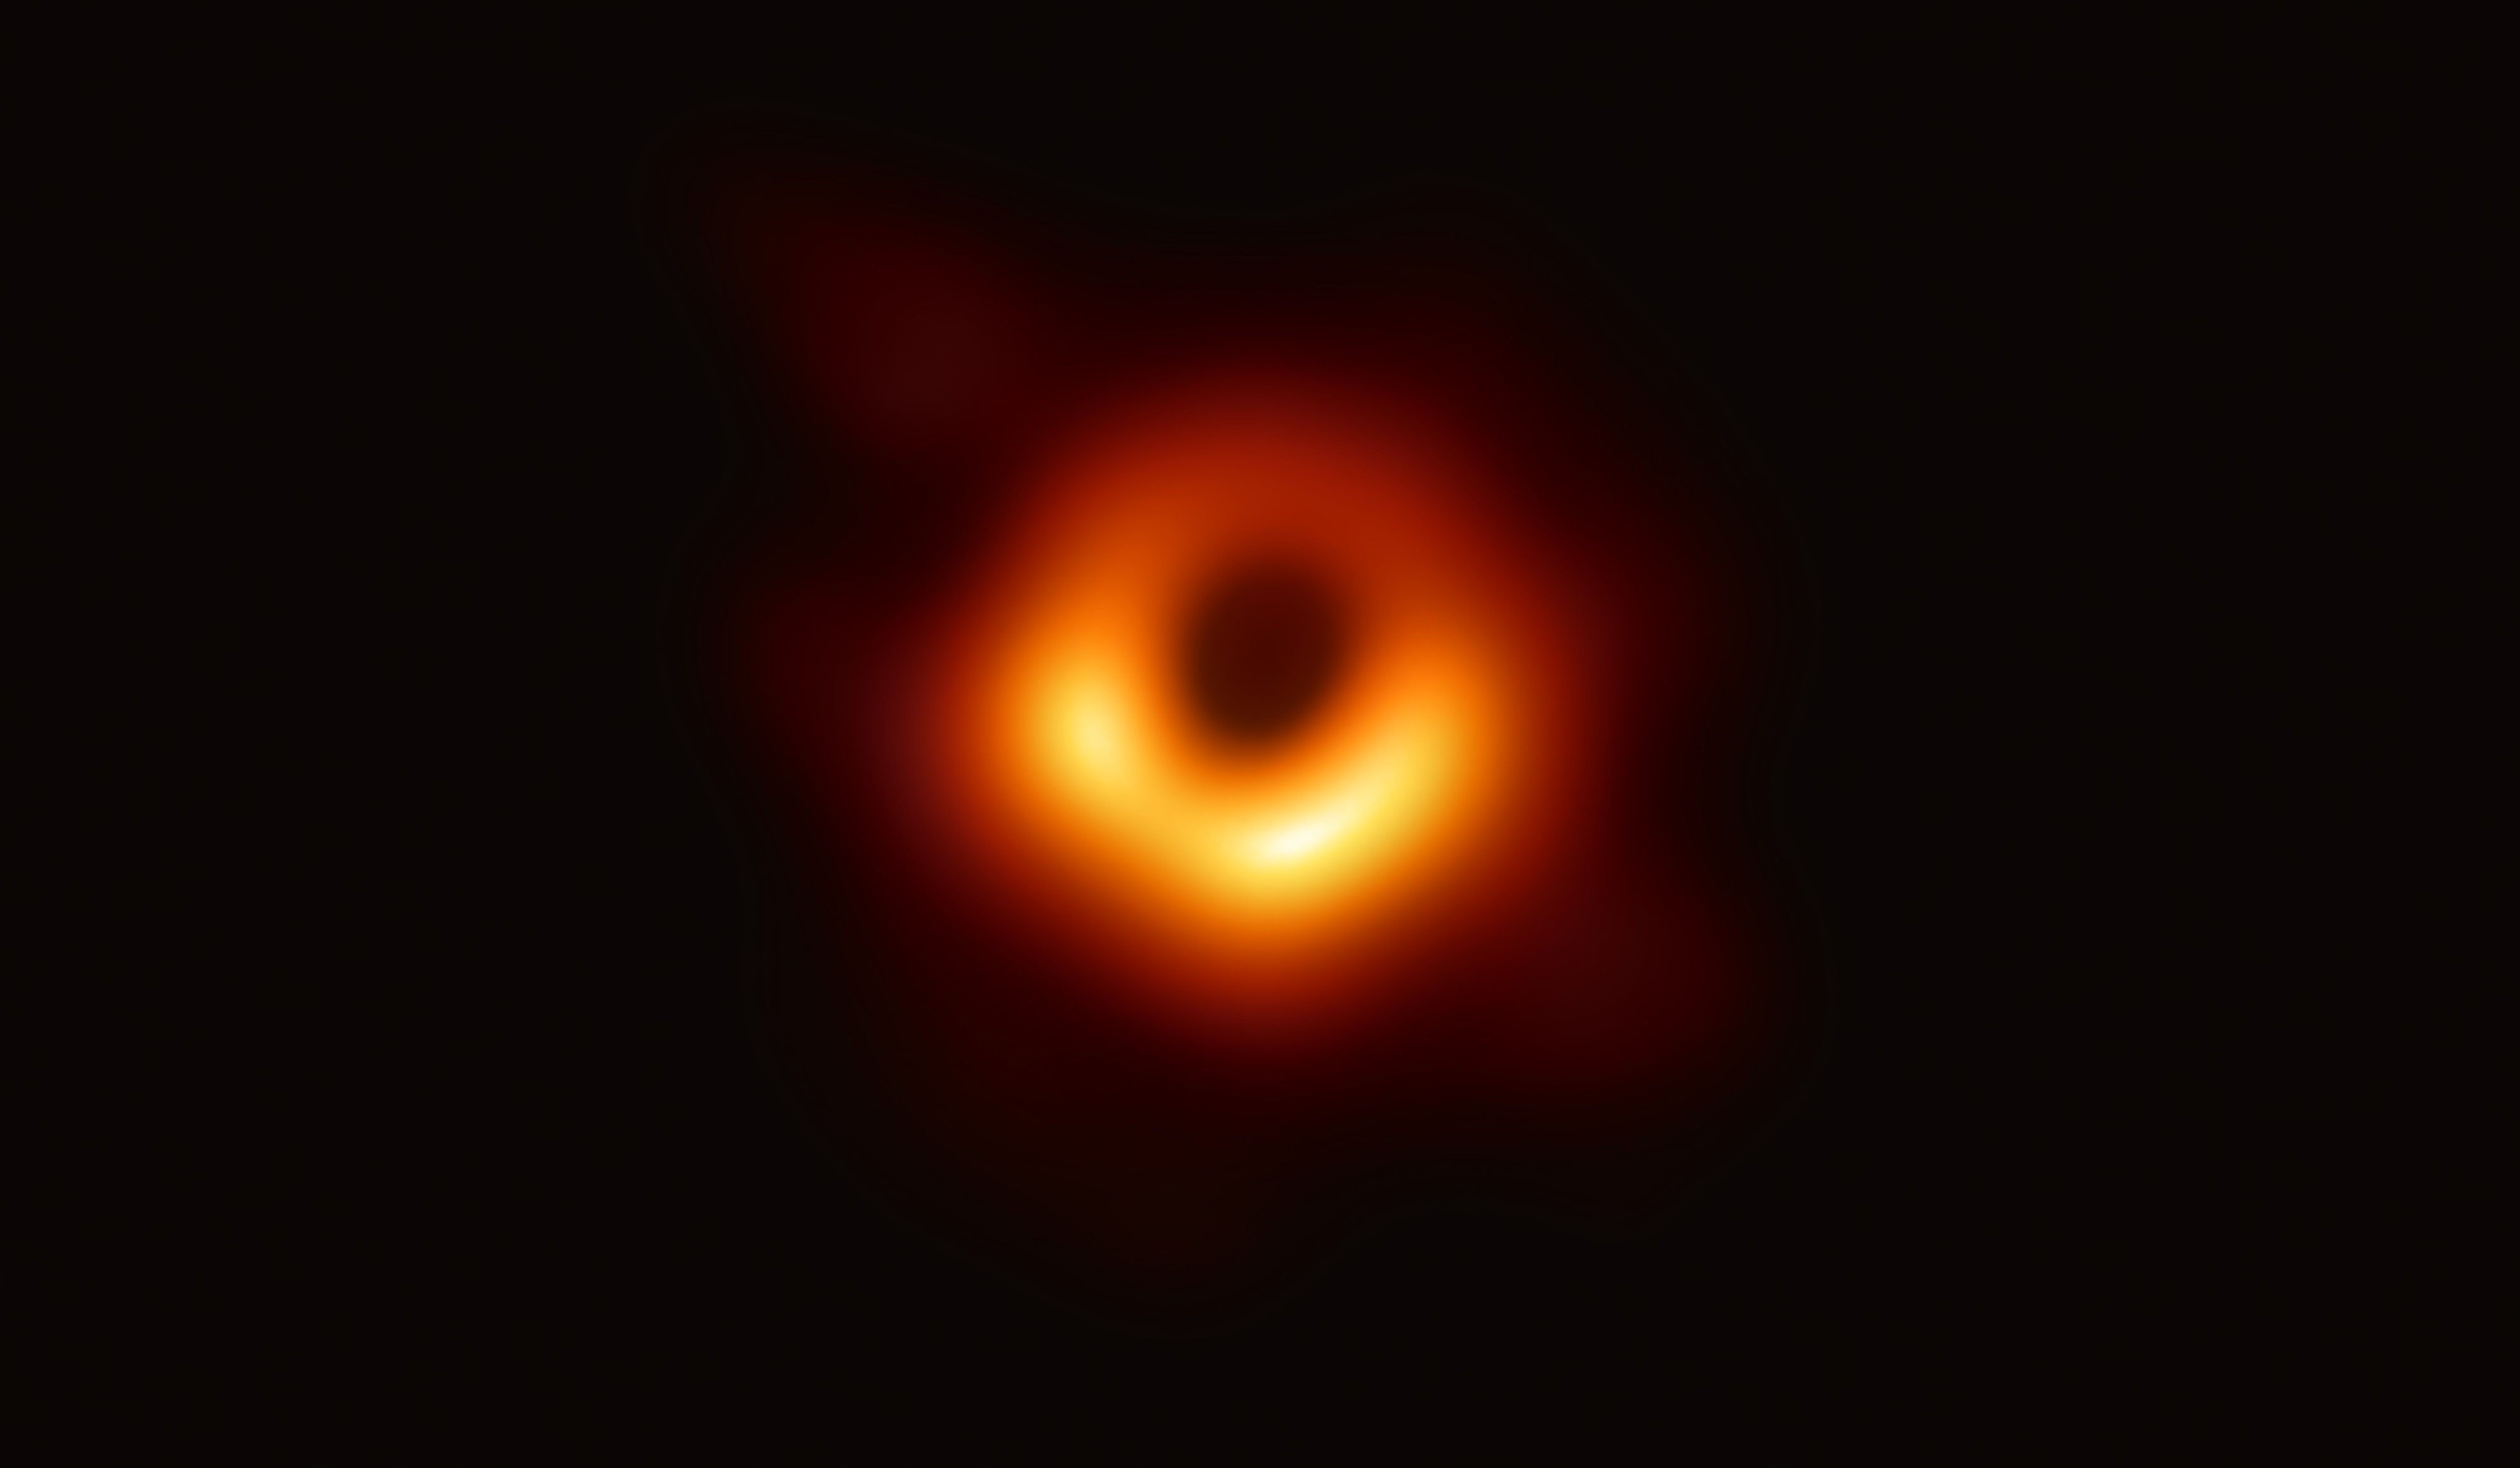 Le premier succès de la collaboration Event Horizon Telescope avec la première image d’un trou noir – en l’occurrence M87* que l'on voit ici – en sera sans nul doute suivi de bien d’autres, à commencer par une image d’un autre trou noir supermassif, celui au cœur de notre Voie lactée, Sgr A*. Mais cette réussite éclatante ne doit pas nous faire oublier que nous ne savons toujours pas vraiment comment sont nés les trous noirs, contenant de quelques millions à quelques milliards de masses solaires, que l’on observe depuis des décennies au centre des galaxies, qu’elles soient spirales ou elliptiques. © Even Horizon Telescope